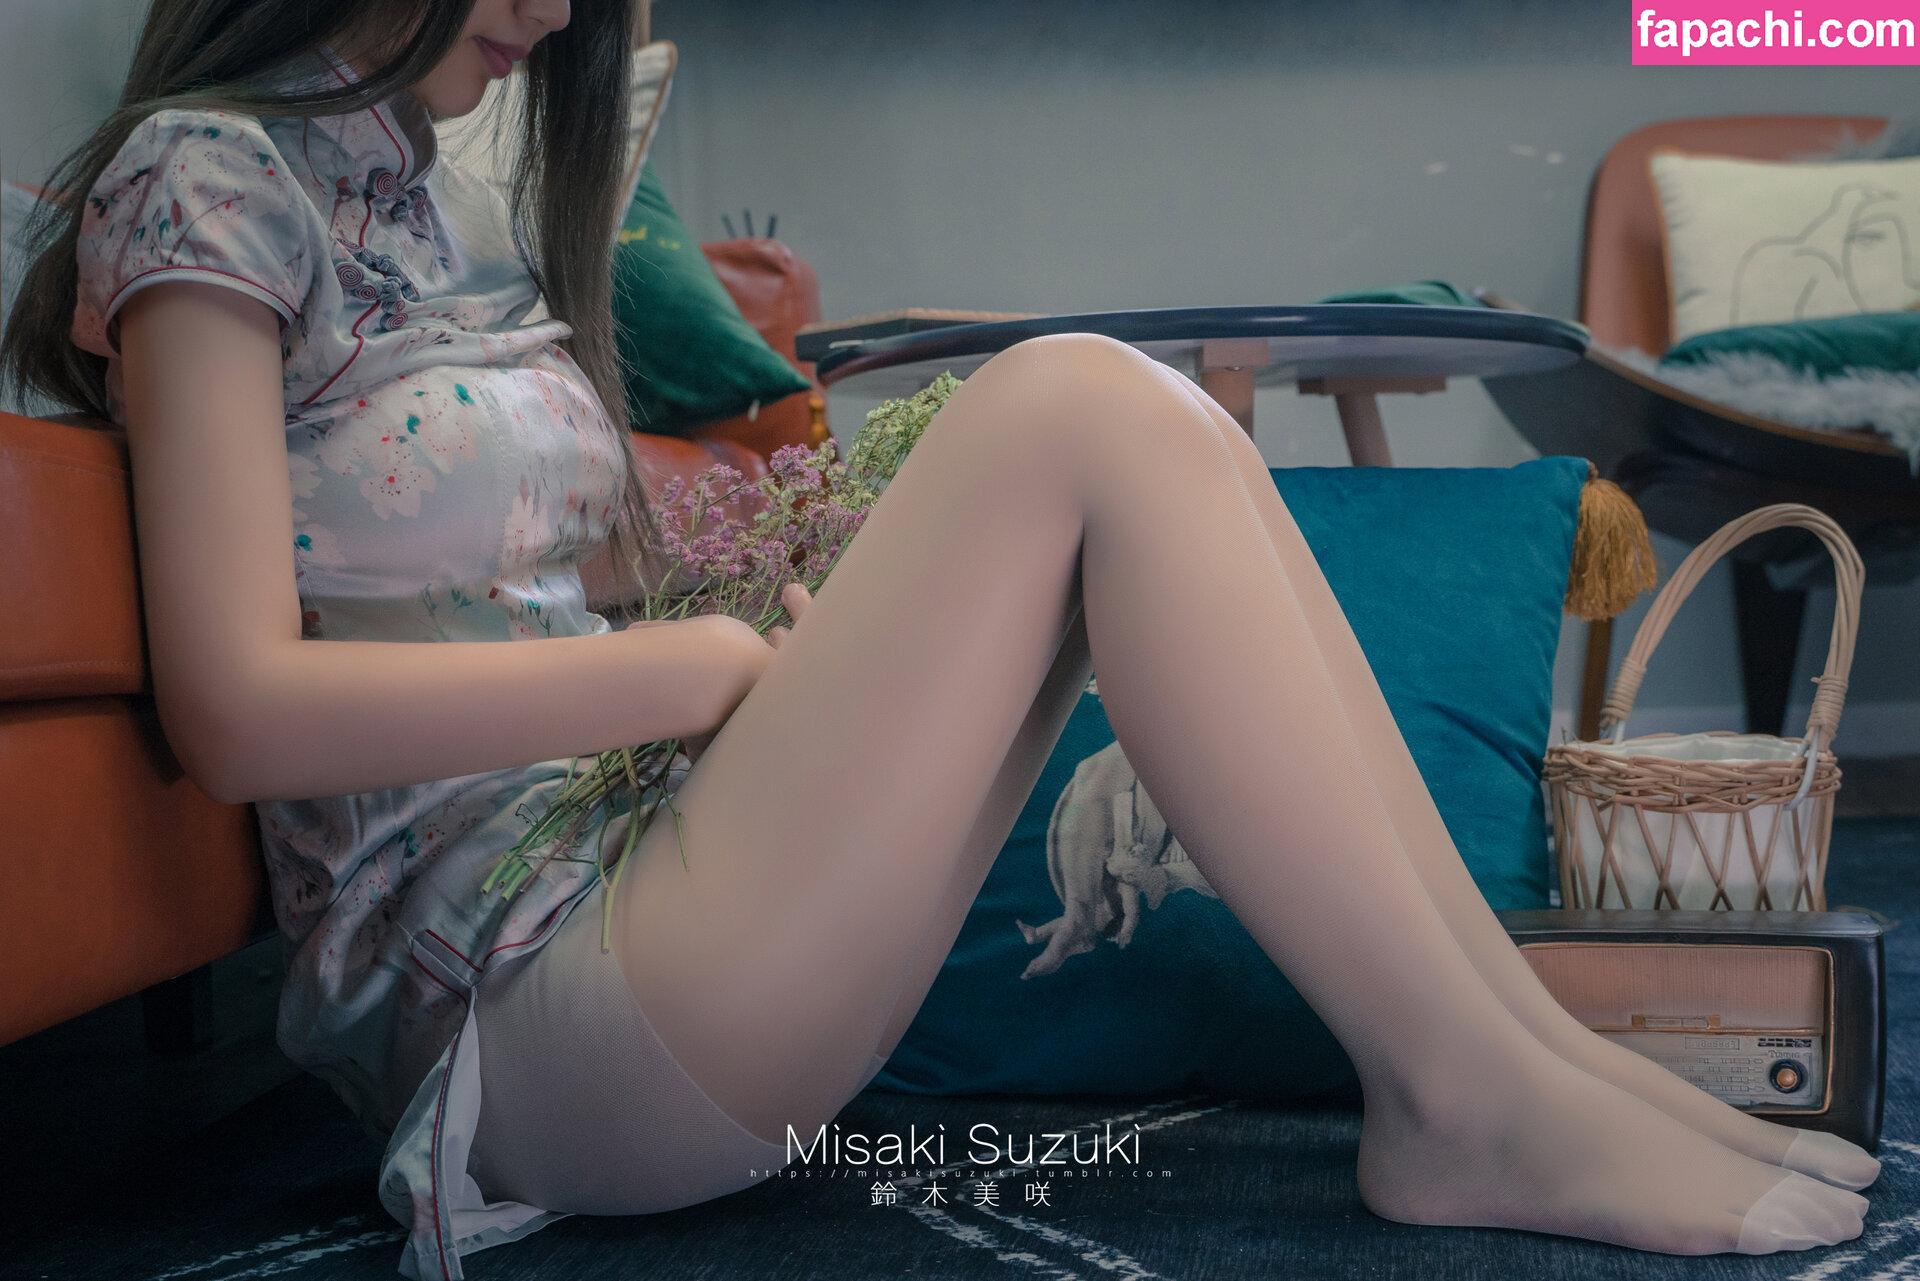 misakiruanruan / Misaki-旗袍 leaked nude photo #0035 from OnlyFans/Patreon